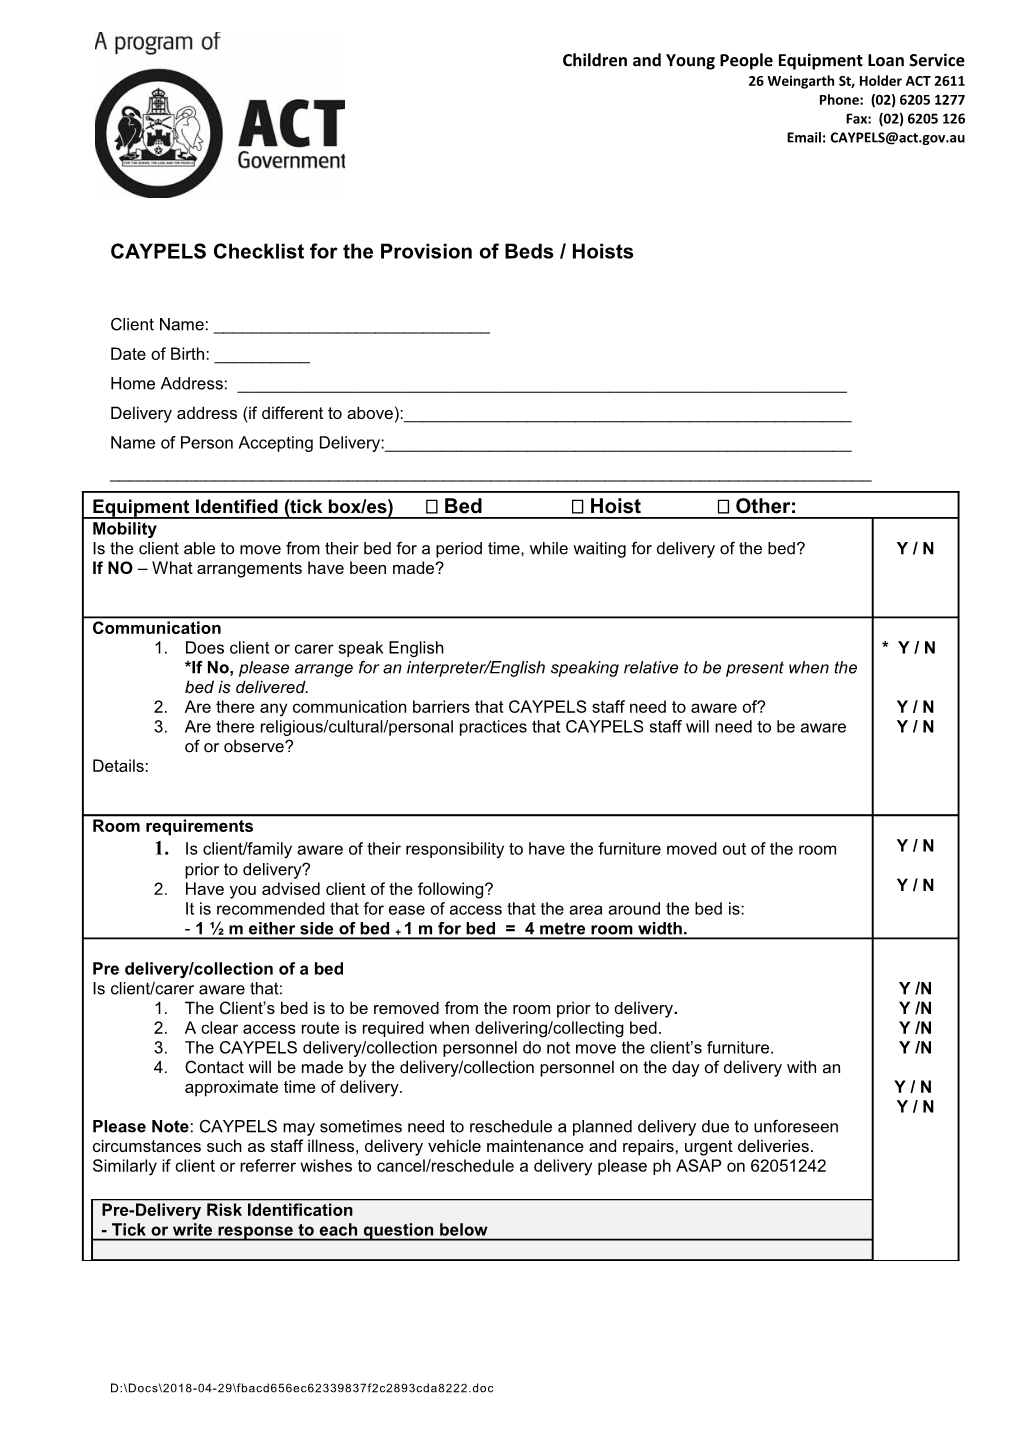 CAYPELS Manual Handling Risk Checklist